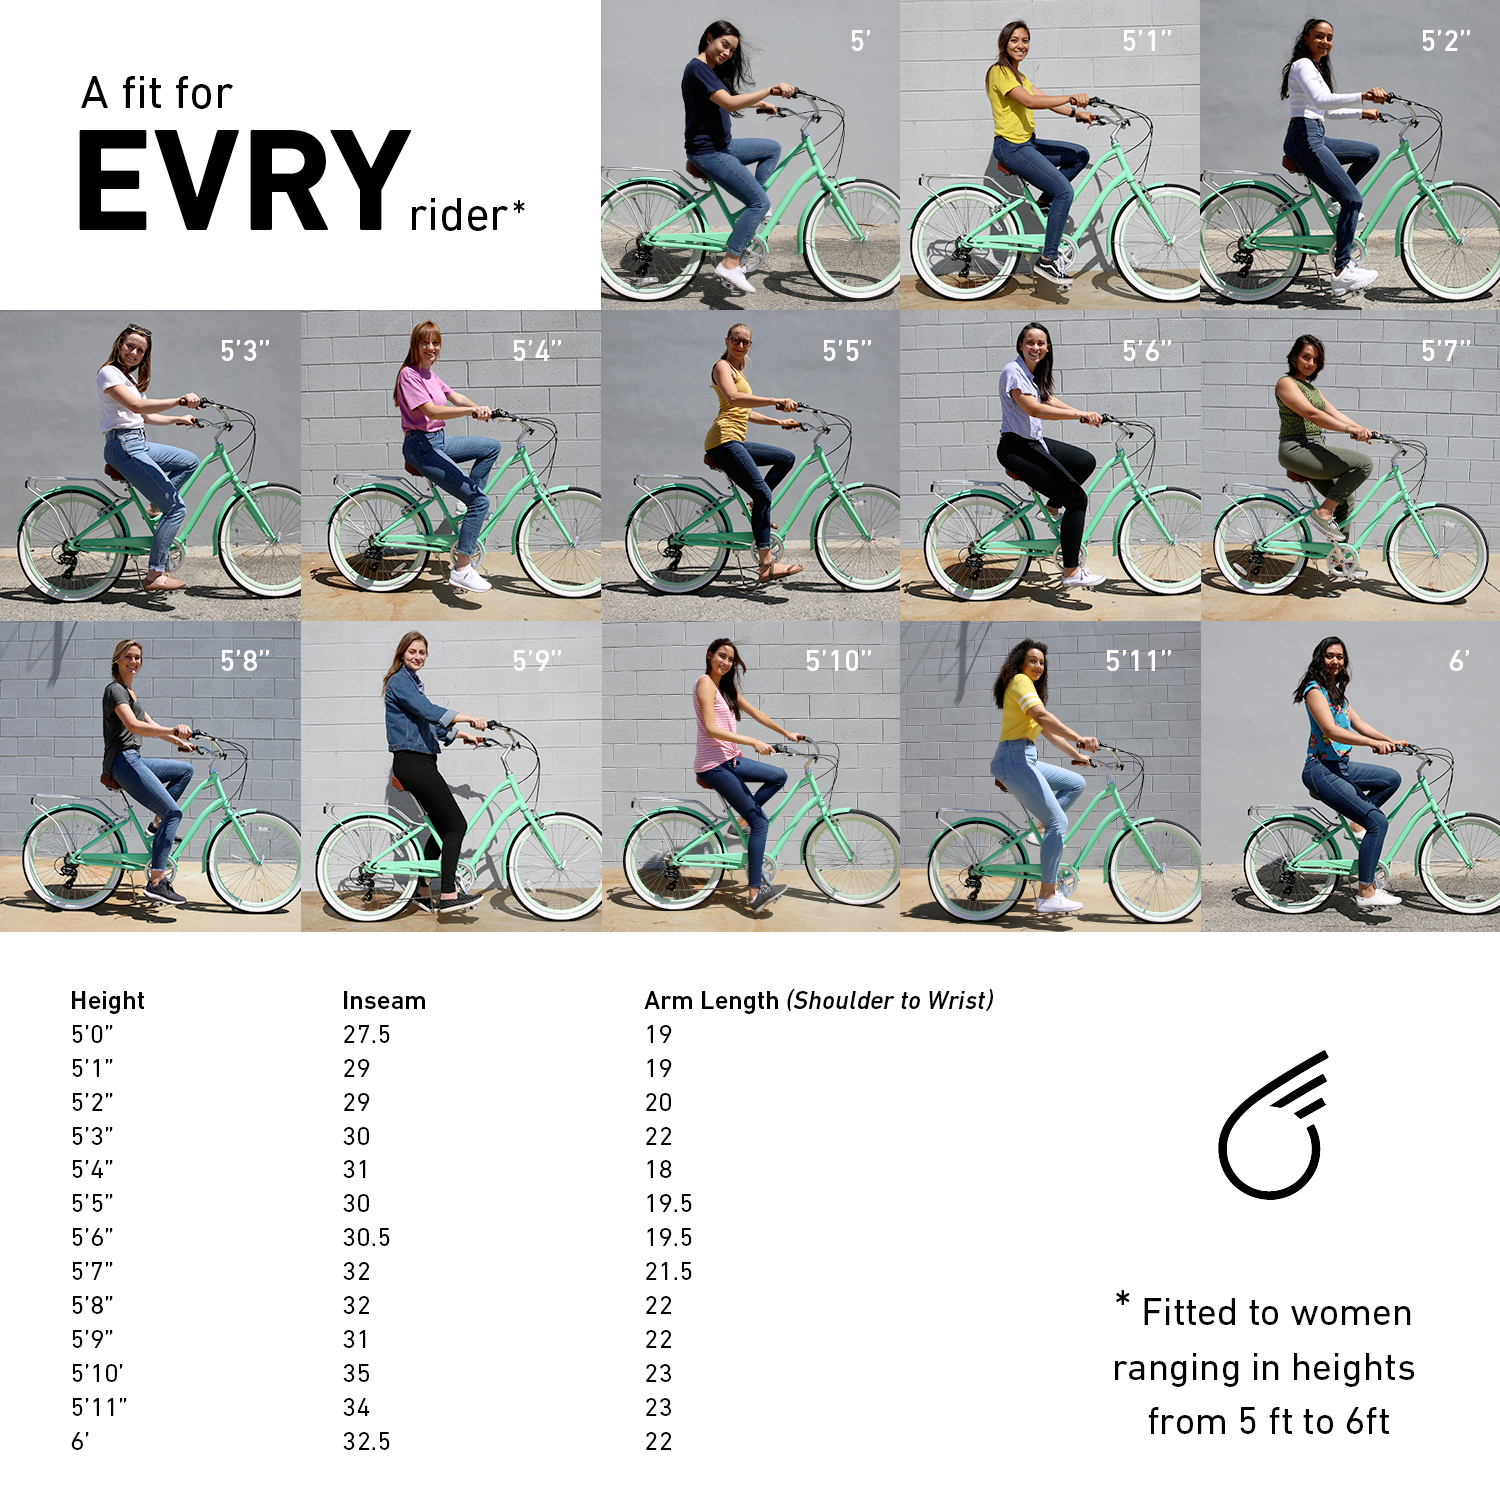 Women_different_heights_on_Bikes.jpg